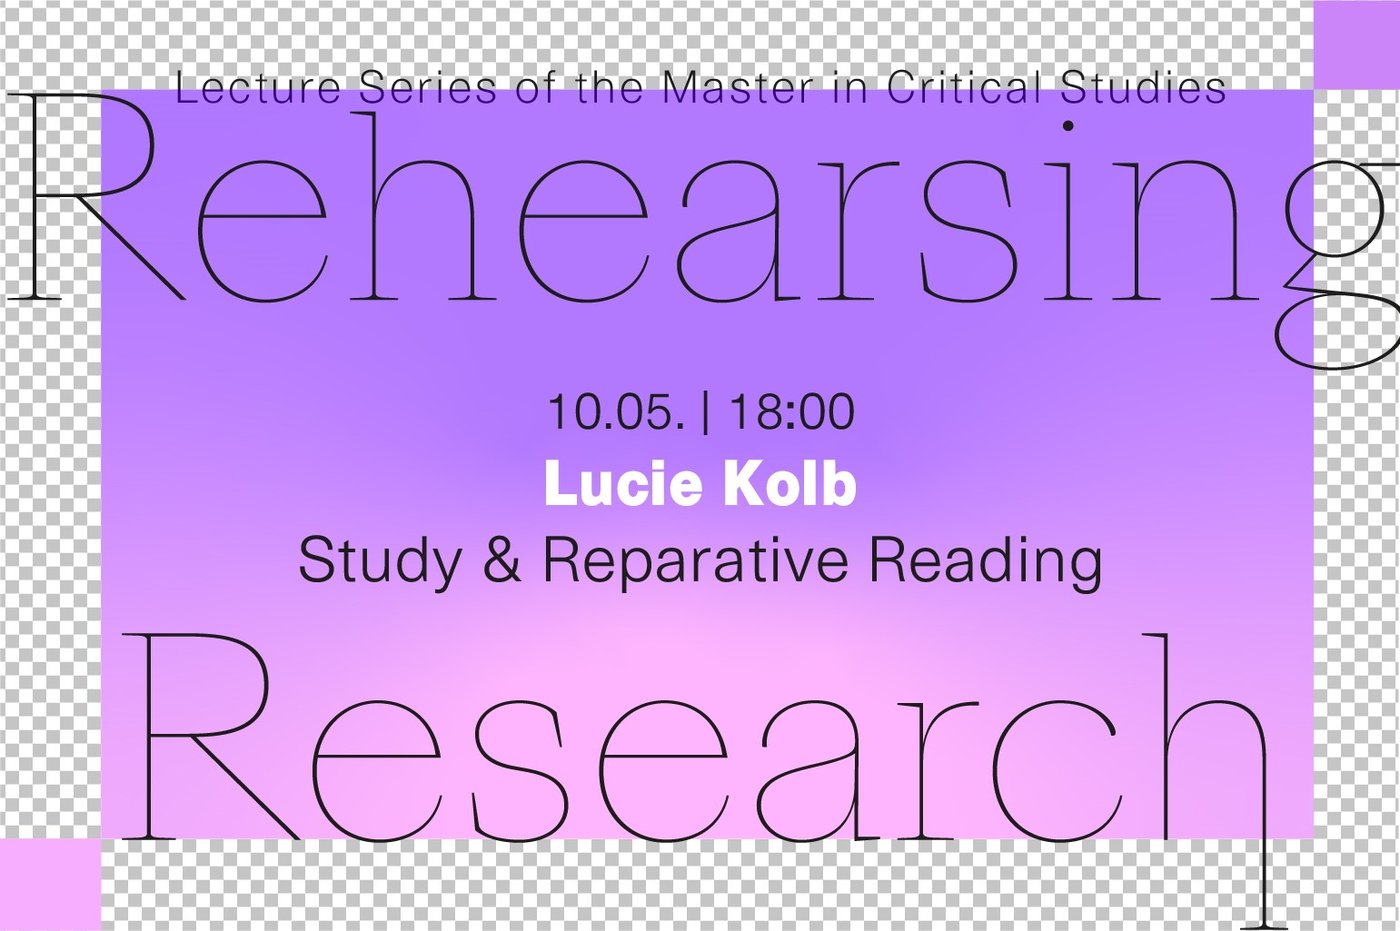 Vortrag von Lucie Kolb über
 
  Study &amp; Reparative Reading.
 
 
 Eingeladen von Tabea Marschall im Rahmen der Lecture Series des Master in Critical Studies.